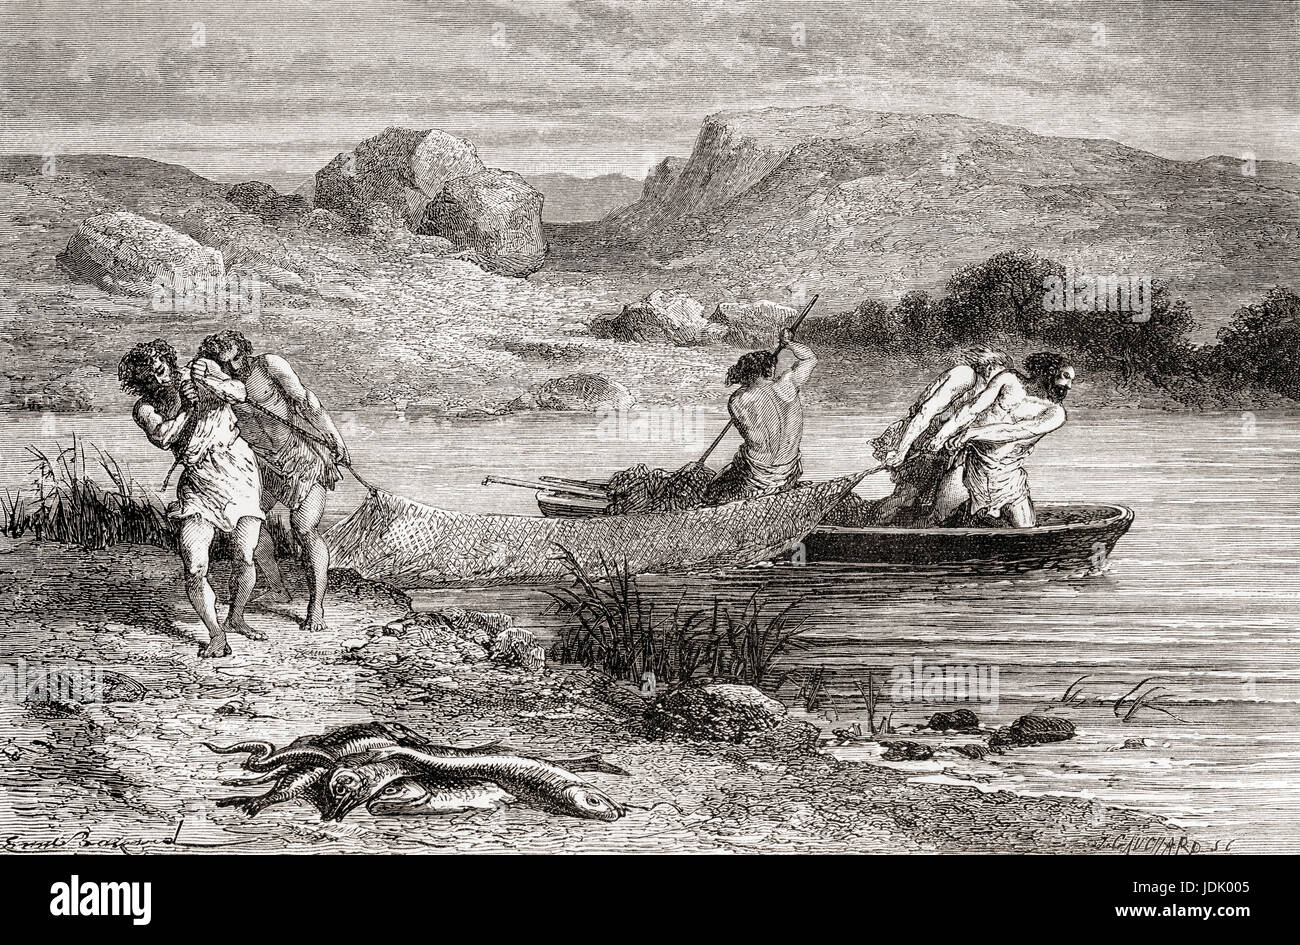 Los pescadores desde el Neolítico aka Nueva Edad de Piedra o edad de la piedra pulida. A partir de l'Homme Primitif, publicado el 1870. Foto de stock